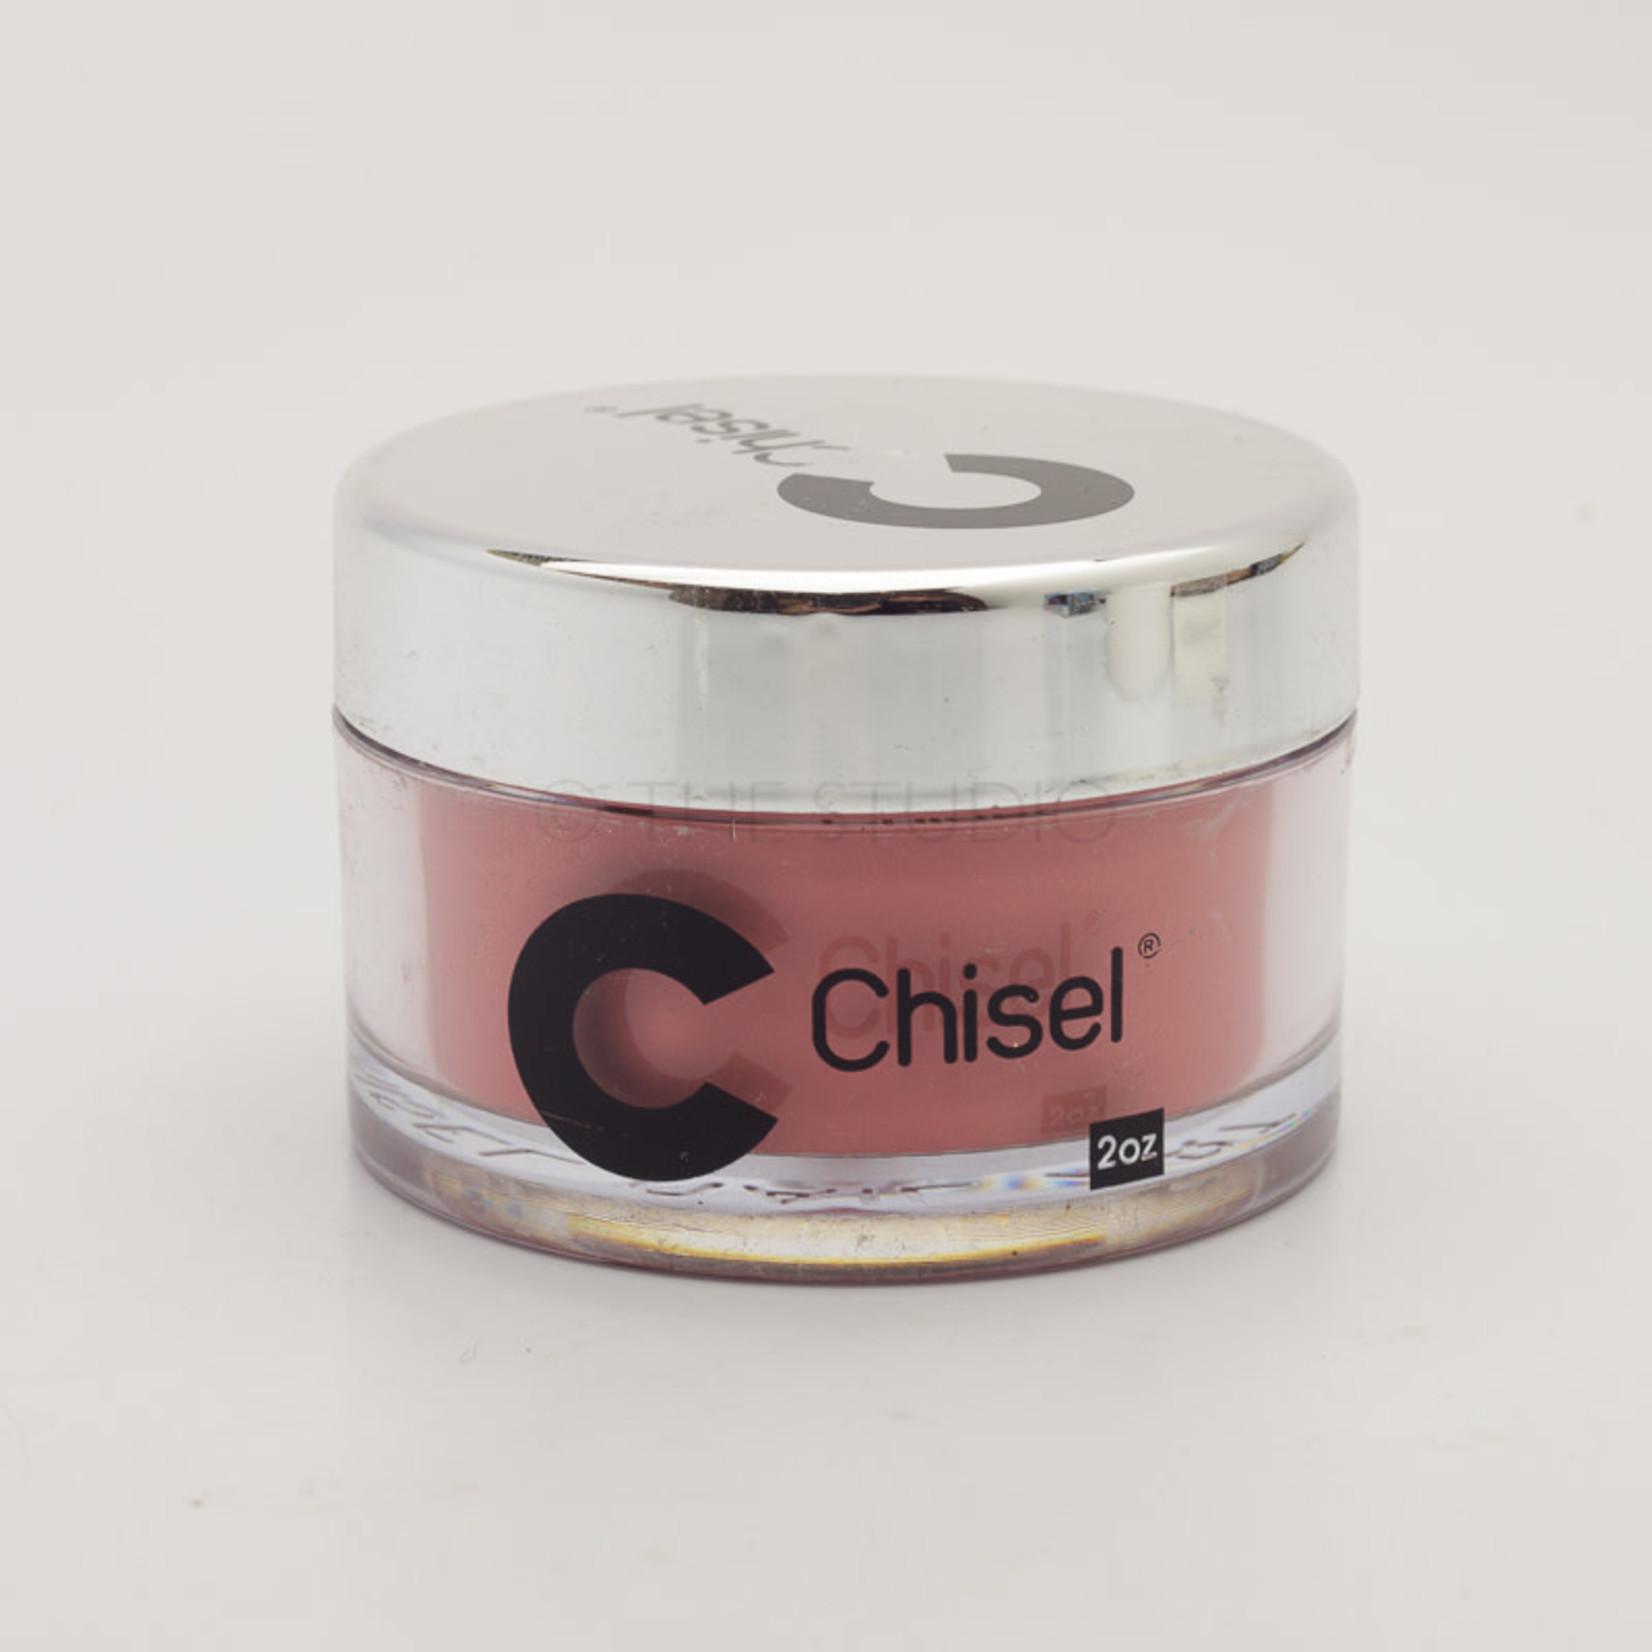 Chisel Chisel - Solid 022 - AIO Powder - 2 oz